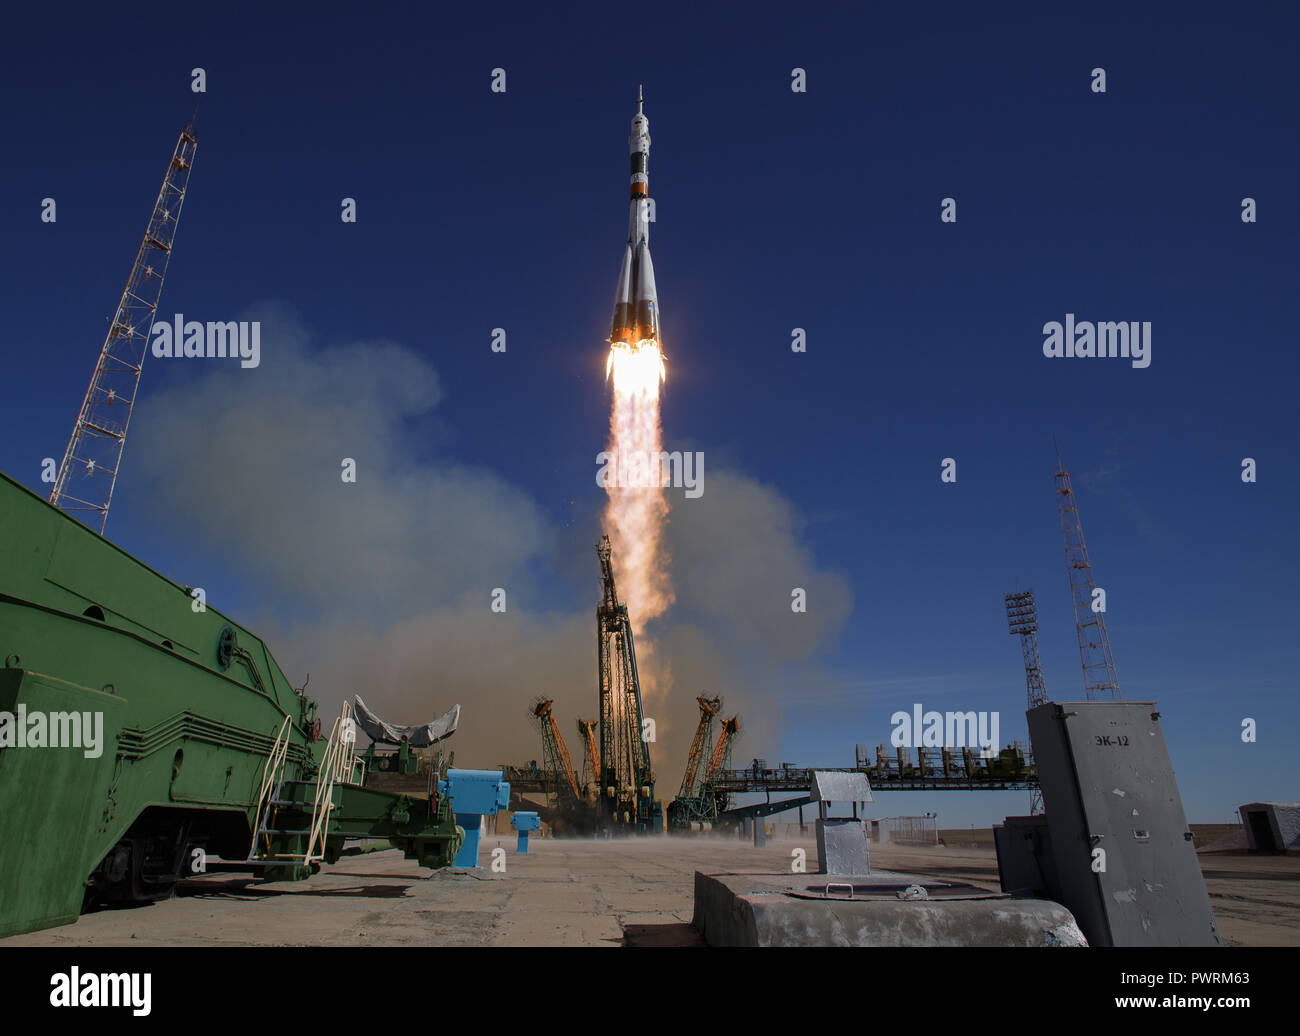 La nave espacial Soyuz MS-10 es lanzado con el ingeniero de vuelo de la expedición 57 Nick haya de la NASA y el ingeniero de vuelo Alexey Ovchinin de Roscosmos, Jueves, Octubre 11, 2018 en el cosmódromo de Baikonur en Kazajstán. Durante el ascenso de la nave Soyuz en órbita, se produjo una anomalía, resultando en una interrupción downrange. La tripulación se recupera rápidamente y está en buenas condiciones. Crédito de la foto: (NASA/Bill Ingalls) Foto de stock